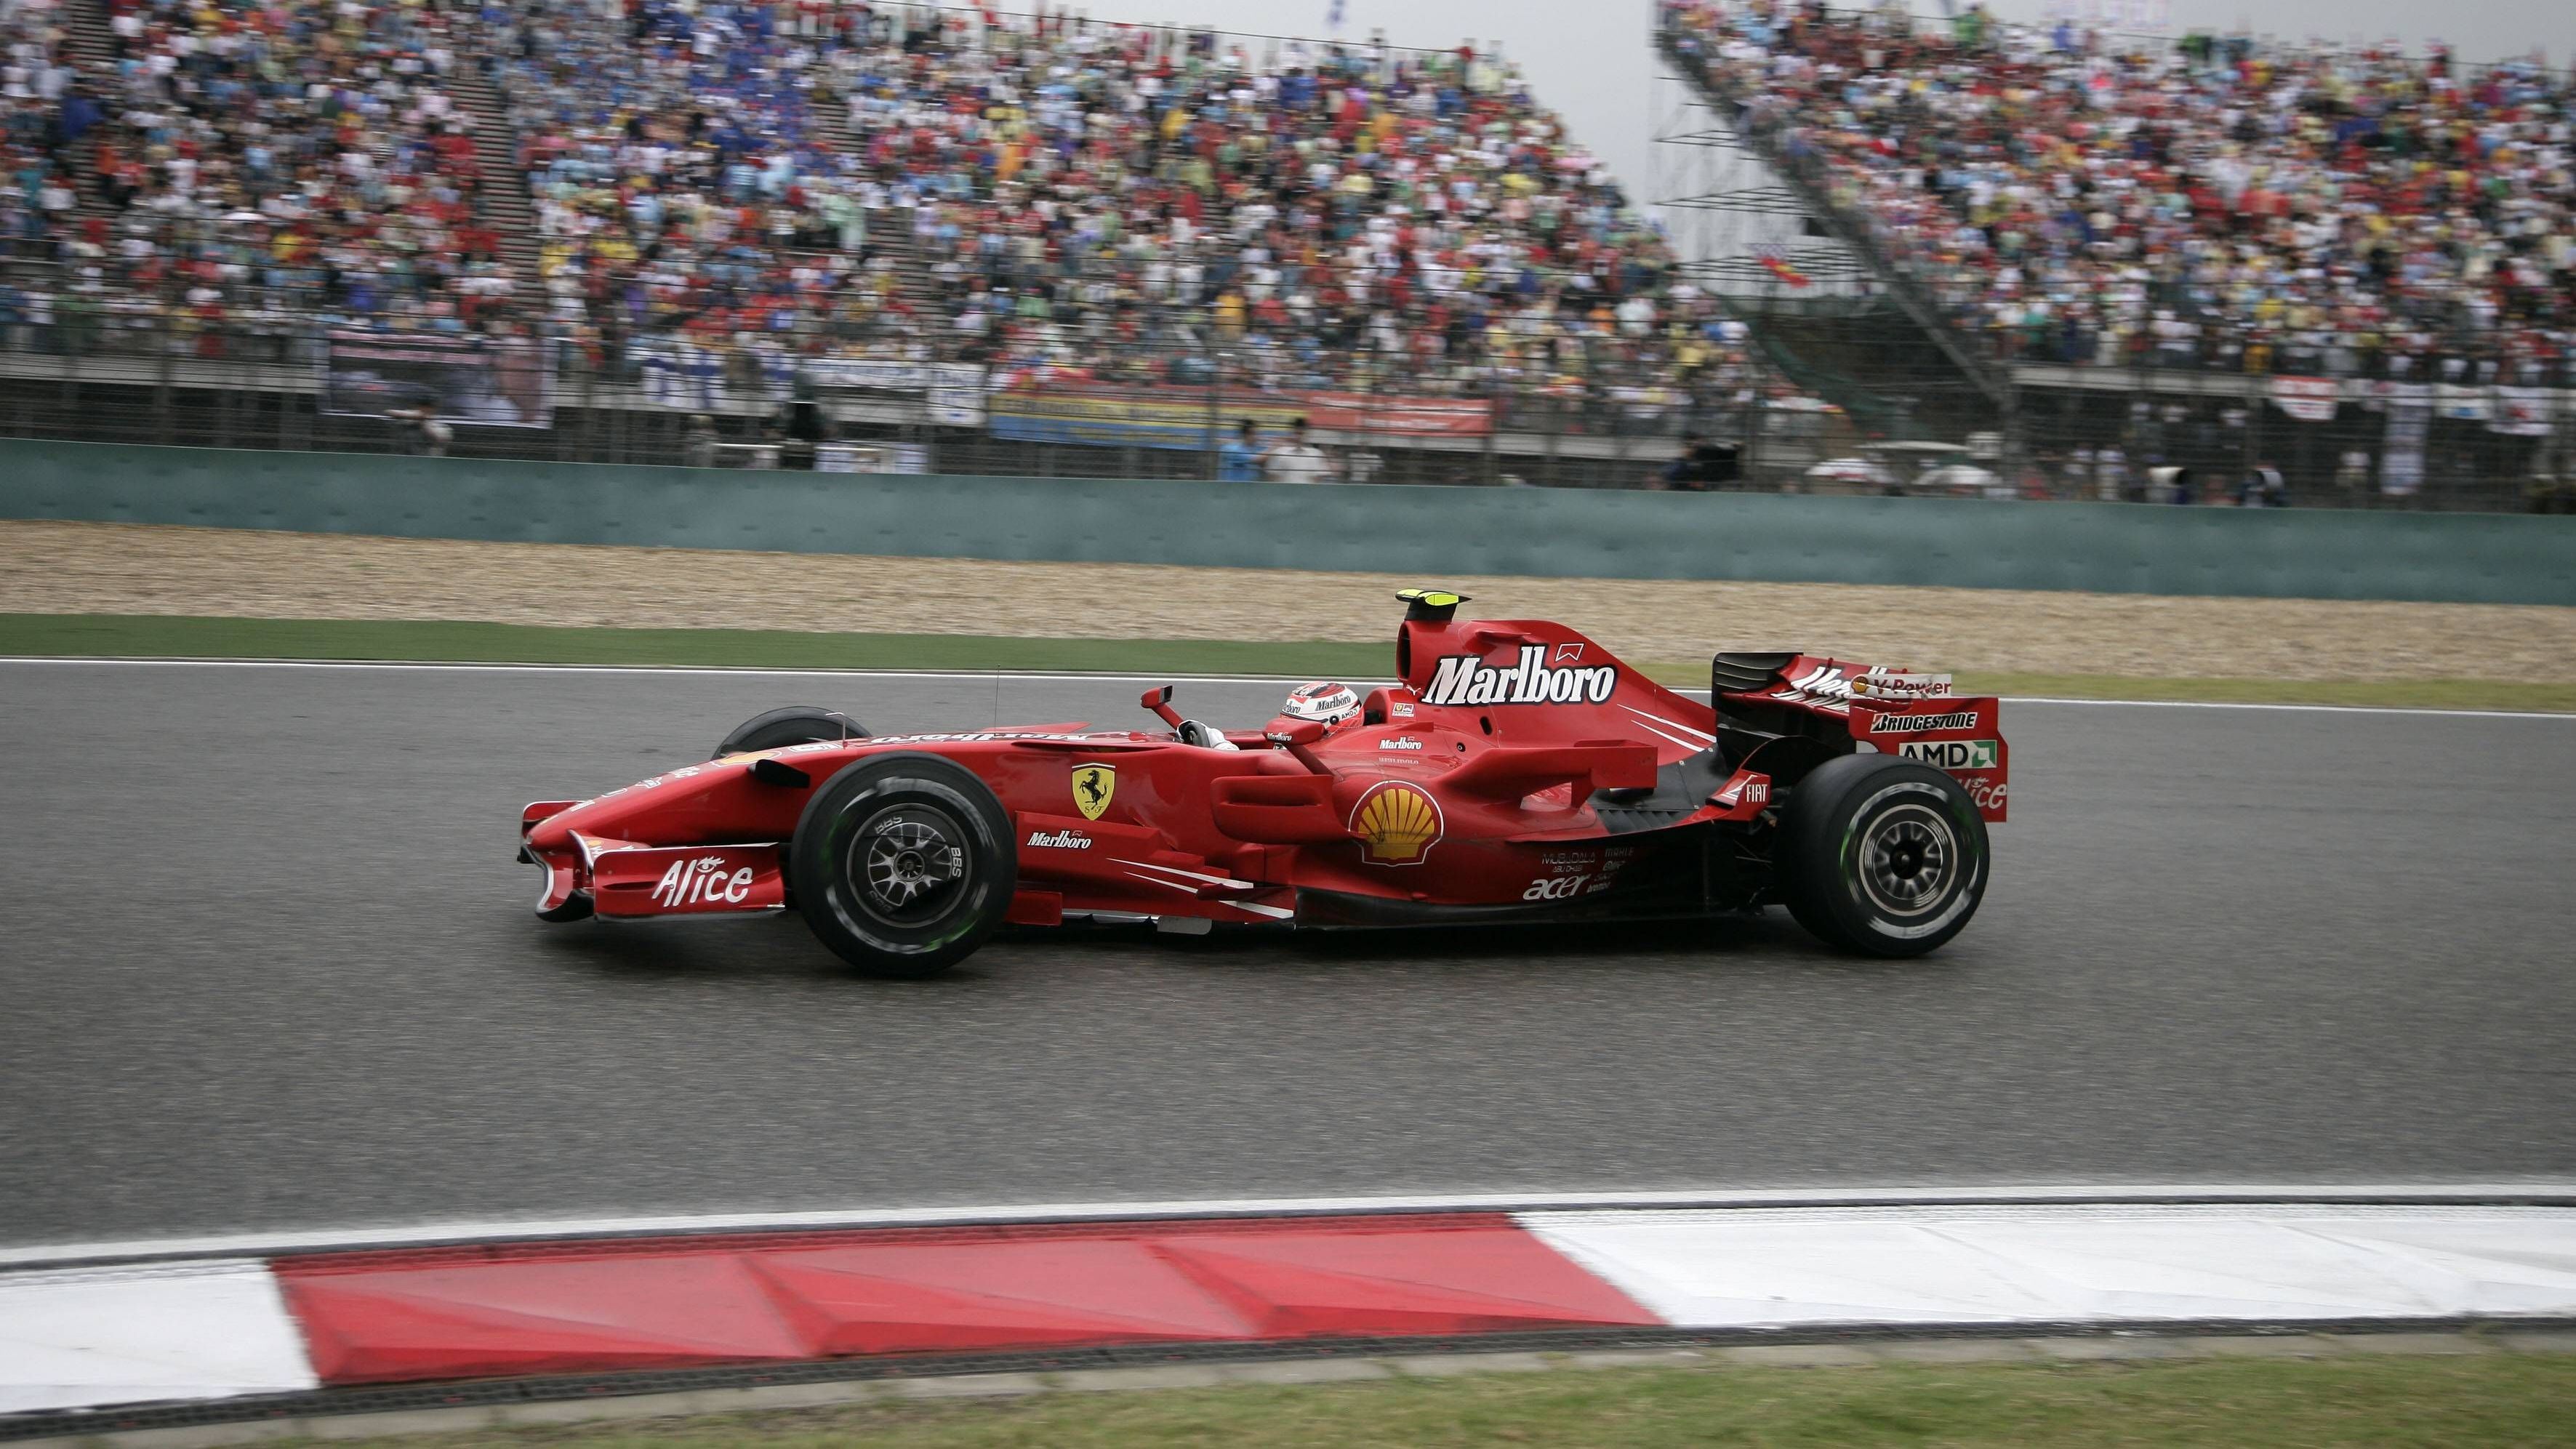 <strong>Kimi Räikkönen</strong><br>Zwischen 2006 und 2007 tat sich in der Königsklasse auf dem Fahrermarkt so richtig viel. Michael Schumacher trat zurück, die Topteams wechselten munter. Kimi Räikkönen verließ nach fünf Jahren McLaren – ohne WM-Titel. Dies sollte sich bei seiner nächsten Station ändern. Ein Plan, der aufging. Im Ferrari-Cockpit krönte er sich 2007 zum Weltmeister.